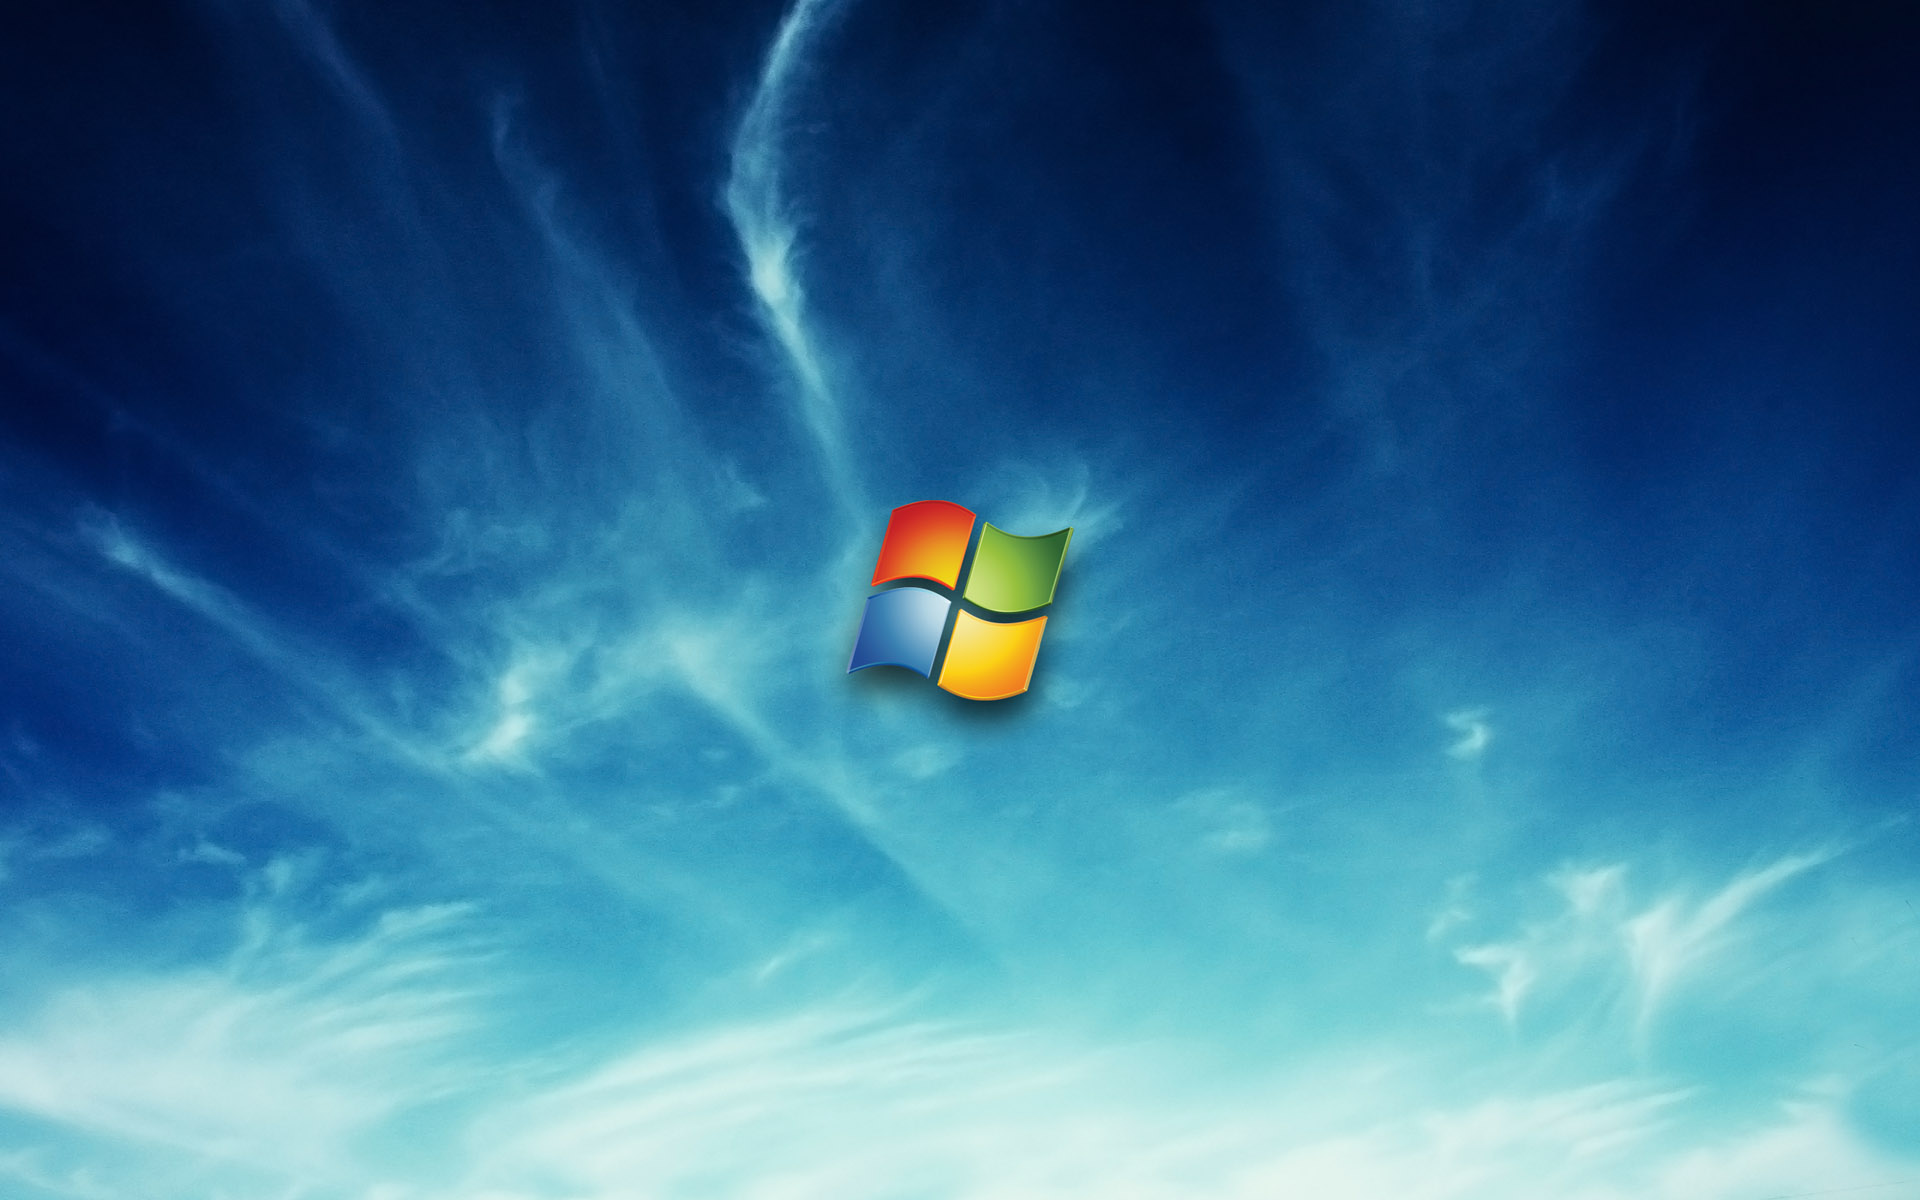 Windows_7_Wallpapers_11.jpg